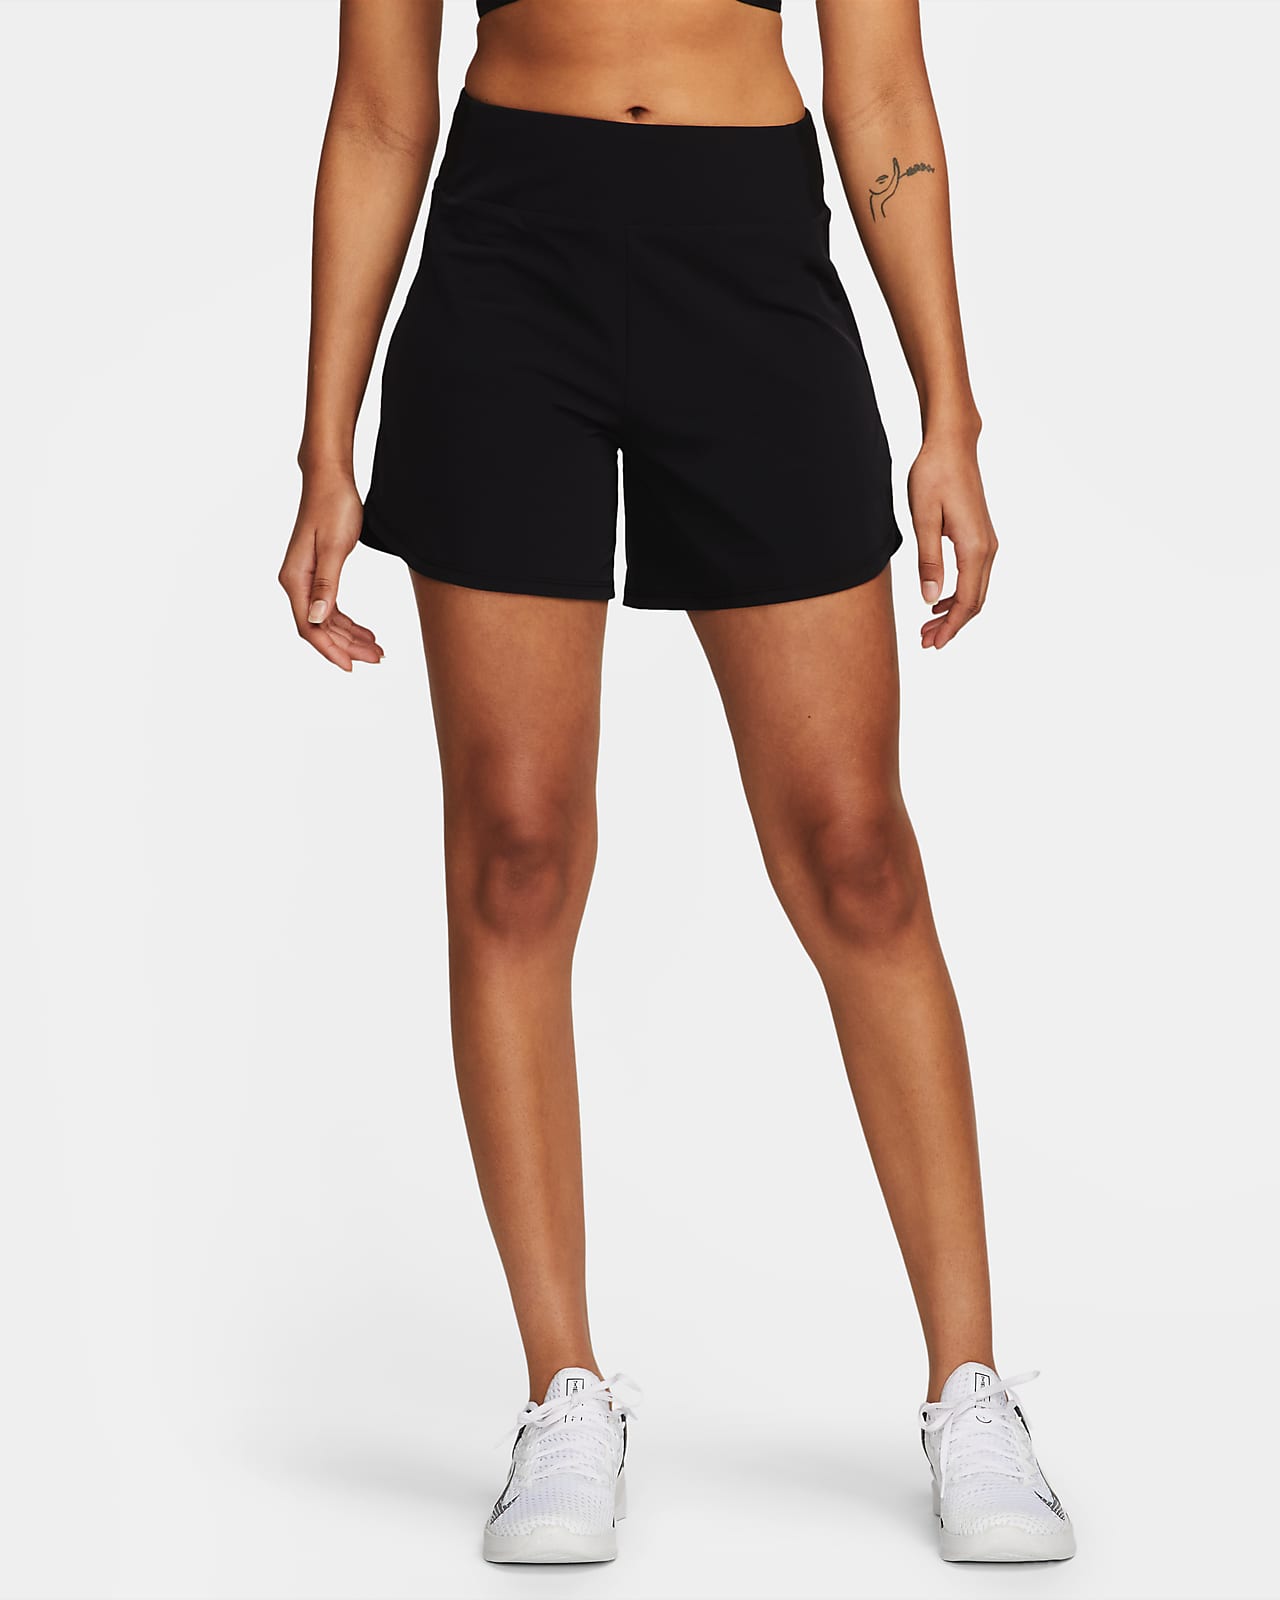 Dámské 13cm kraťasy Nike Bliss Dri-FIT se středně vysokým pasem a všitými kalhotkami